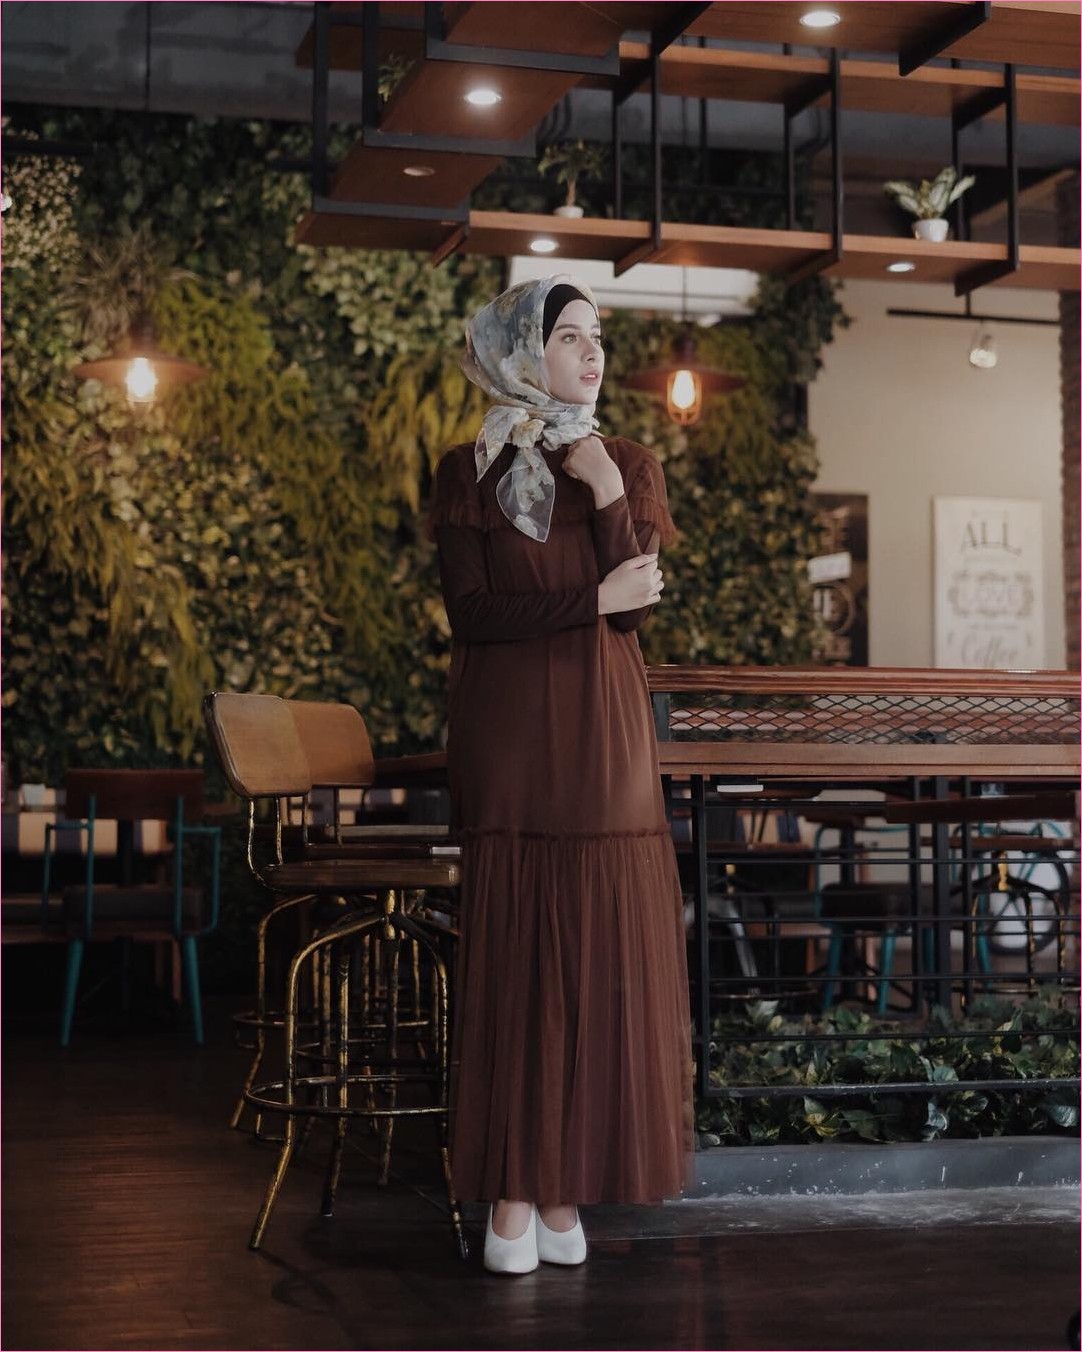 Outfit Baju Gamis Berhijab Ala Selebgram 2018